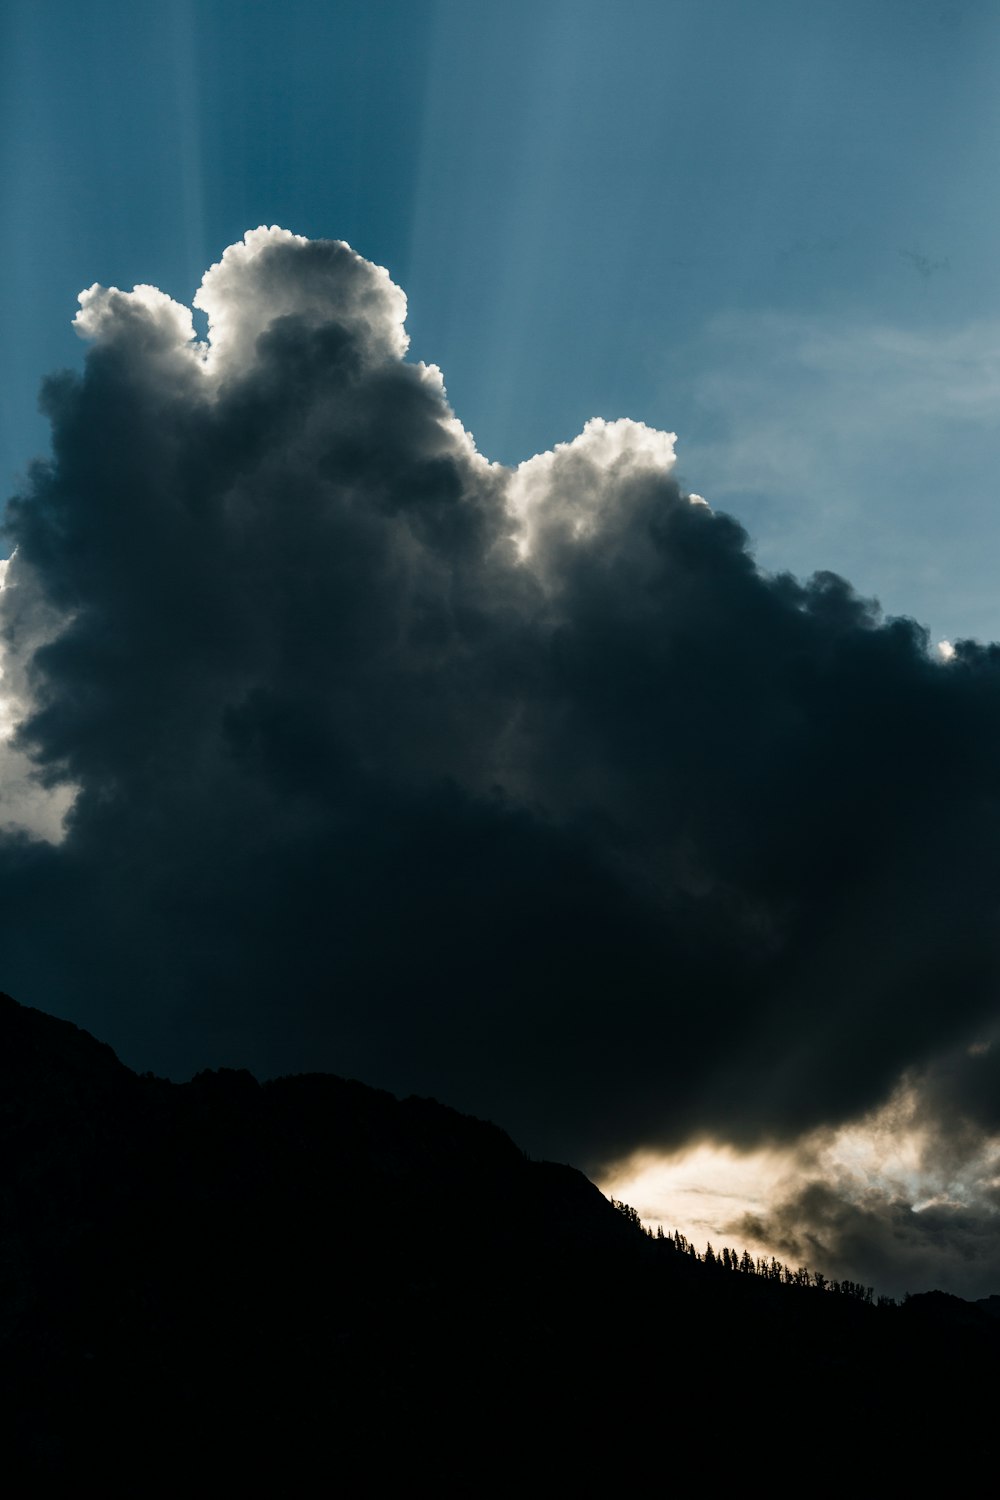 silhouette of mountain under dark clouds